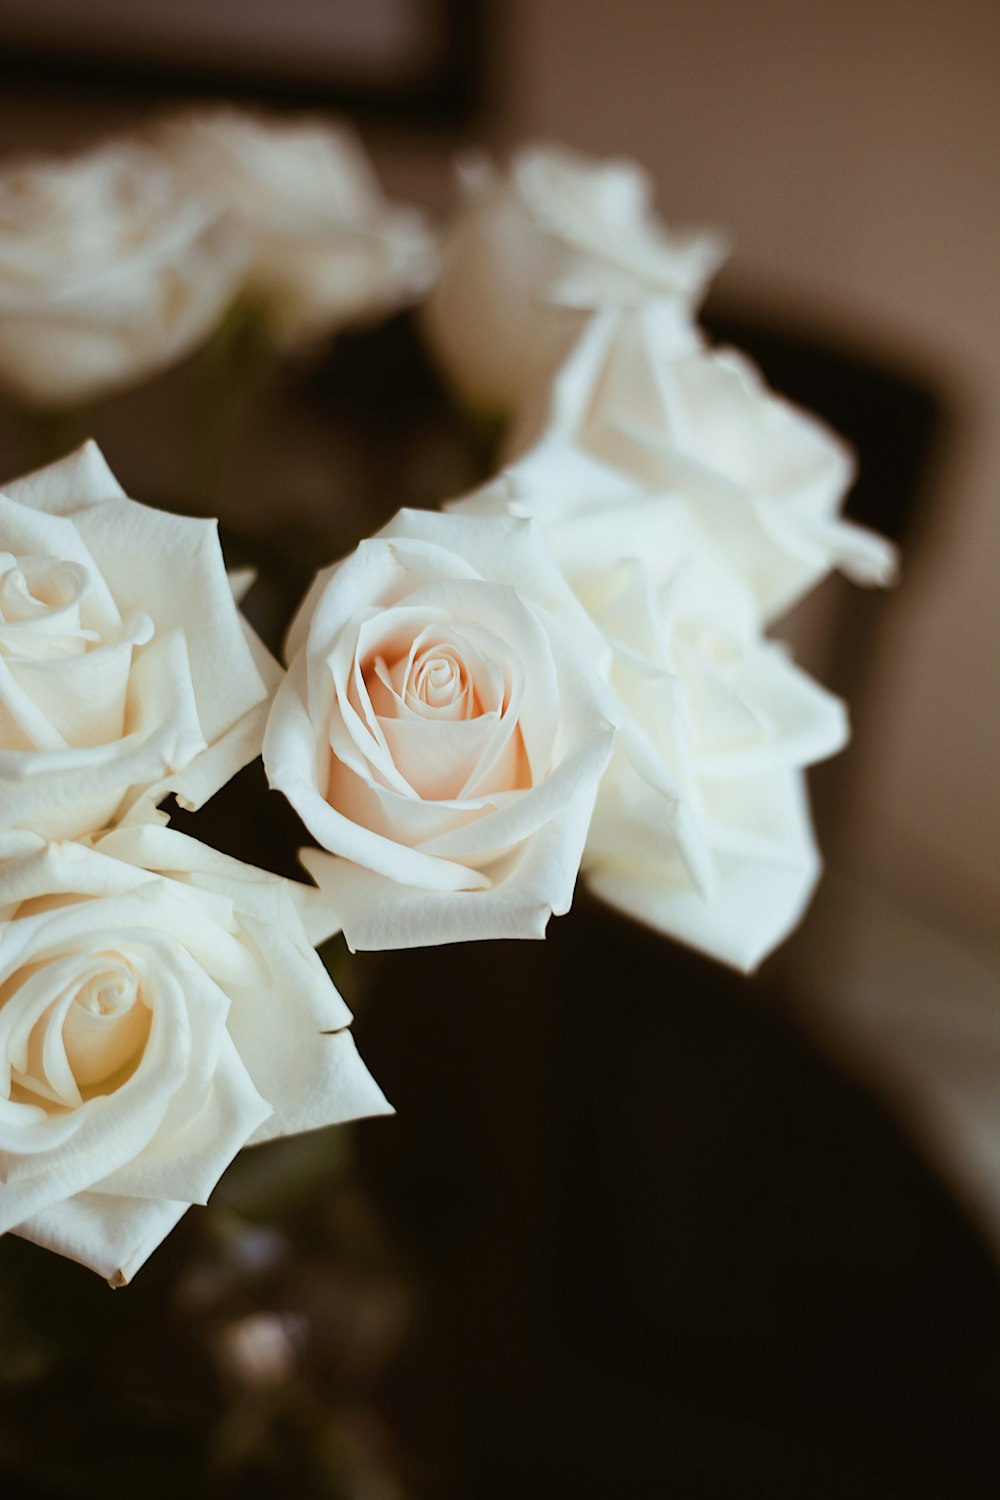 テーブルの上にある白いバラでいっぱいの花瓶